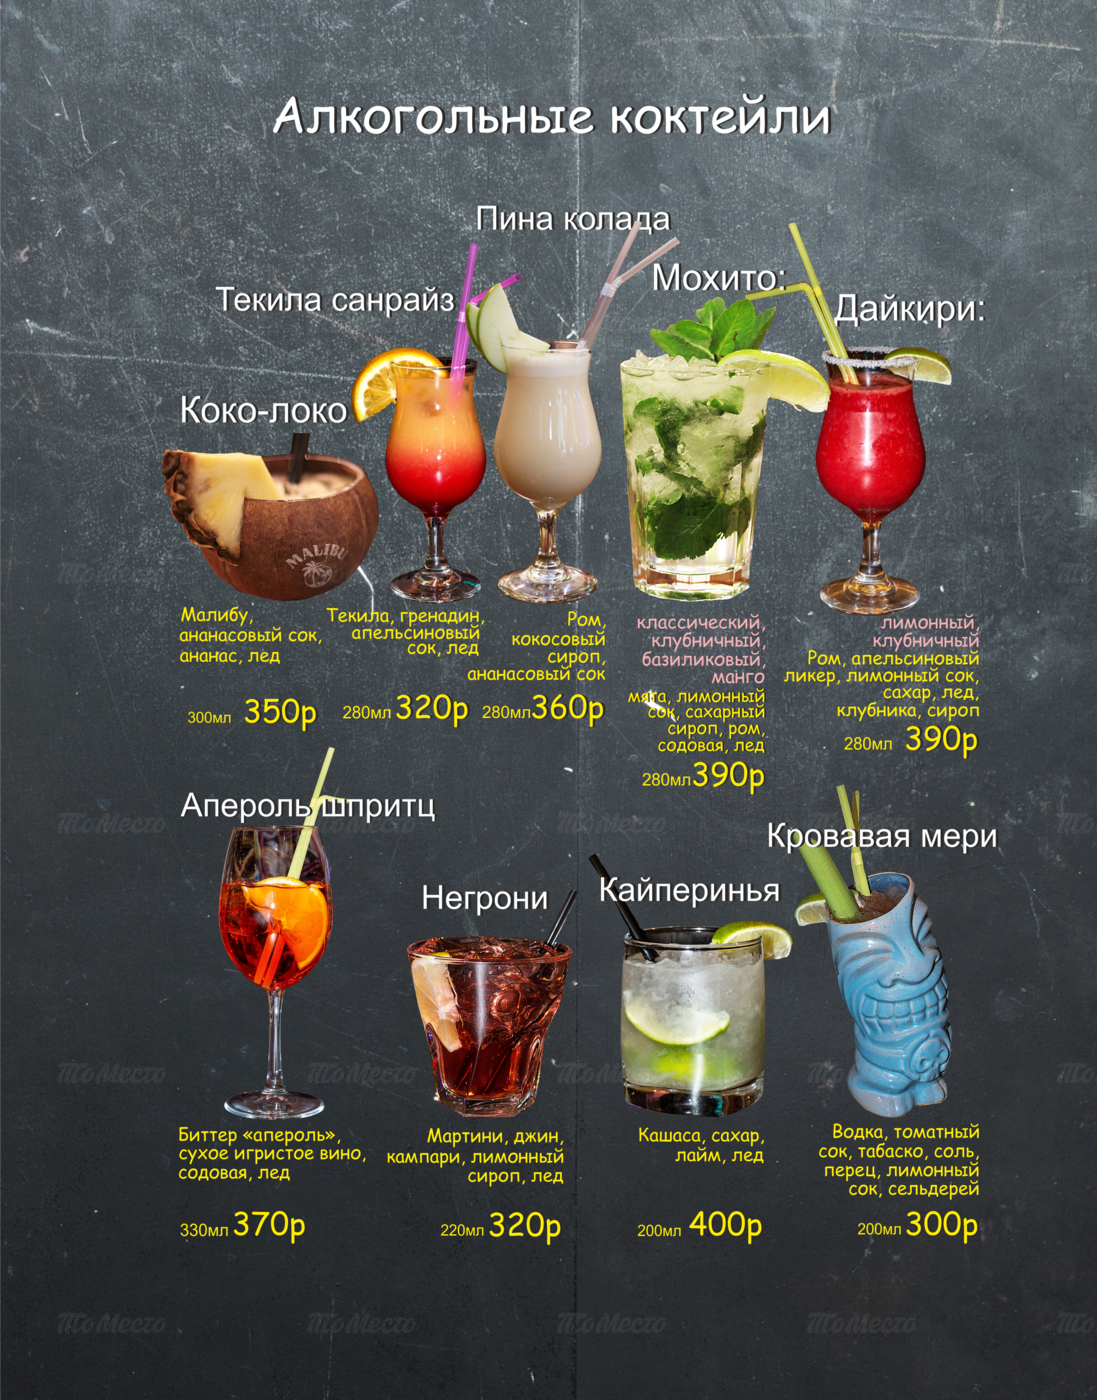 Виды алкогольных коктейлей с описанием